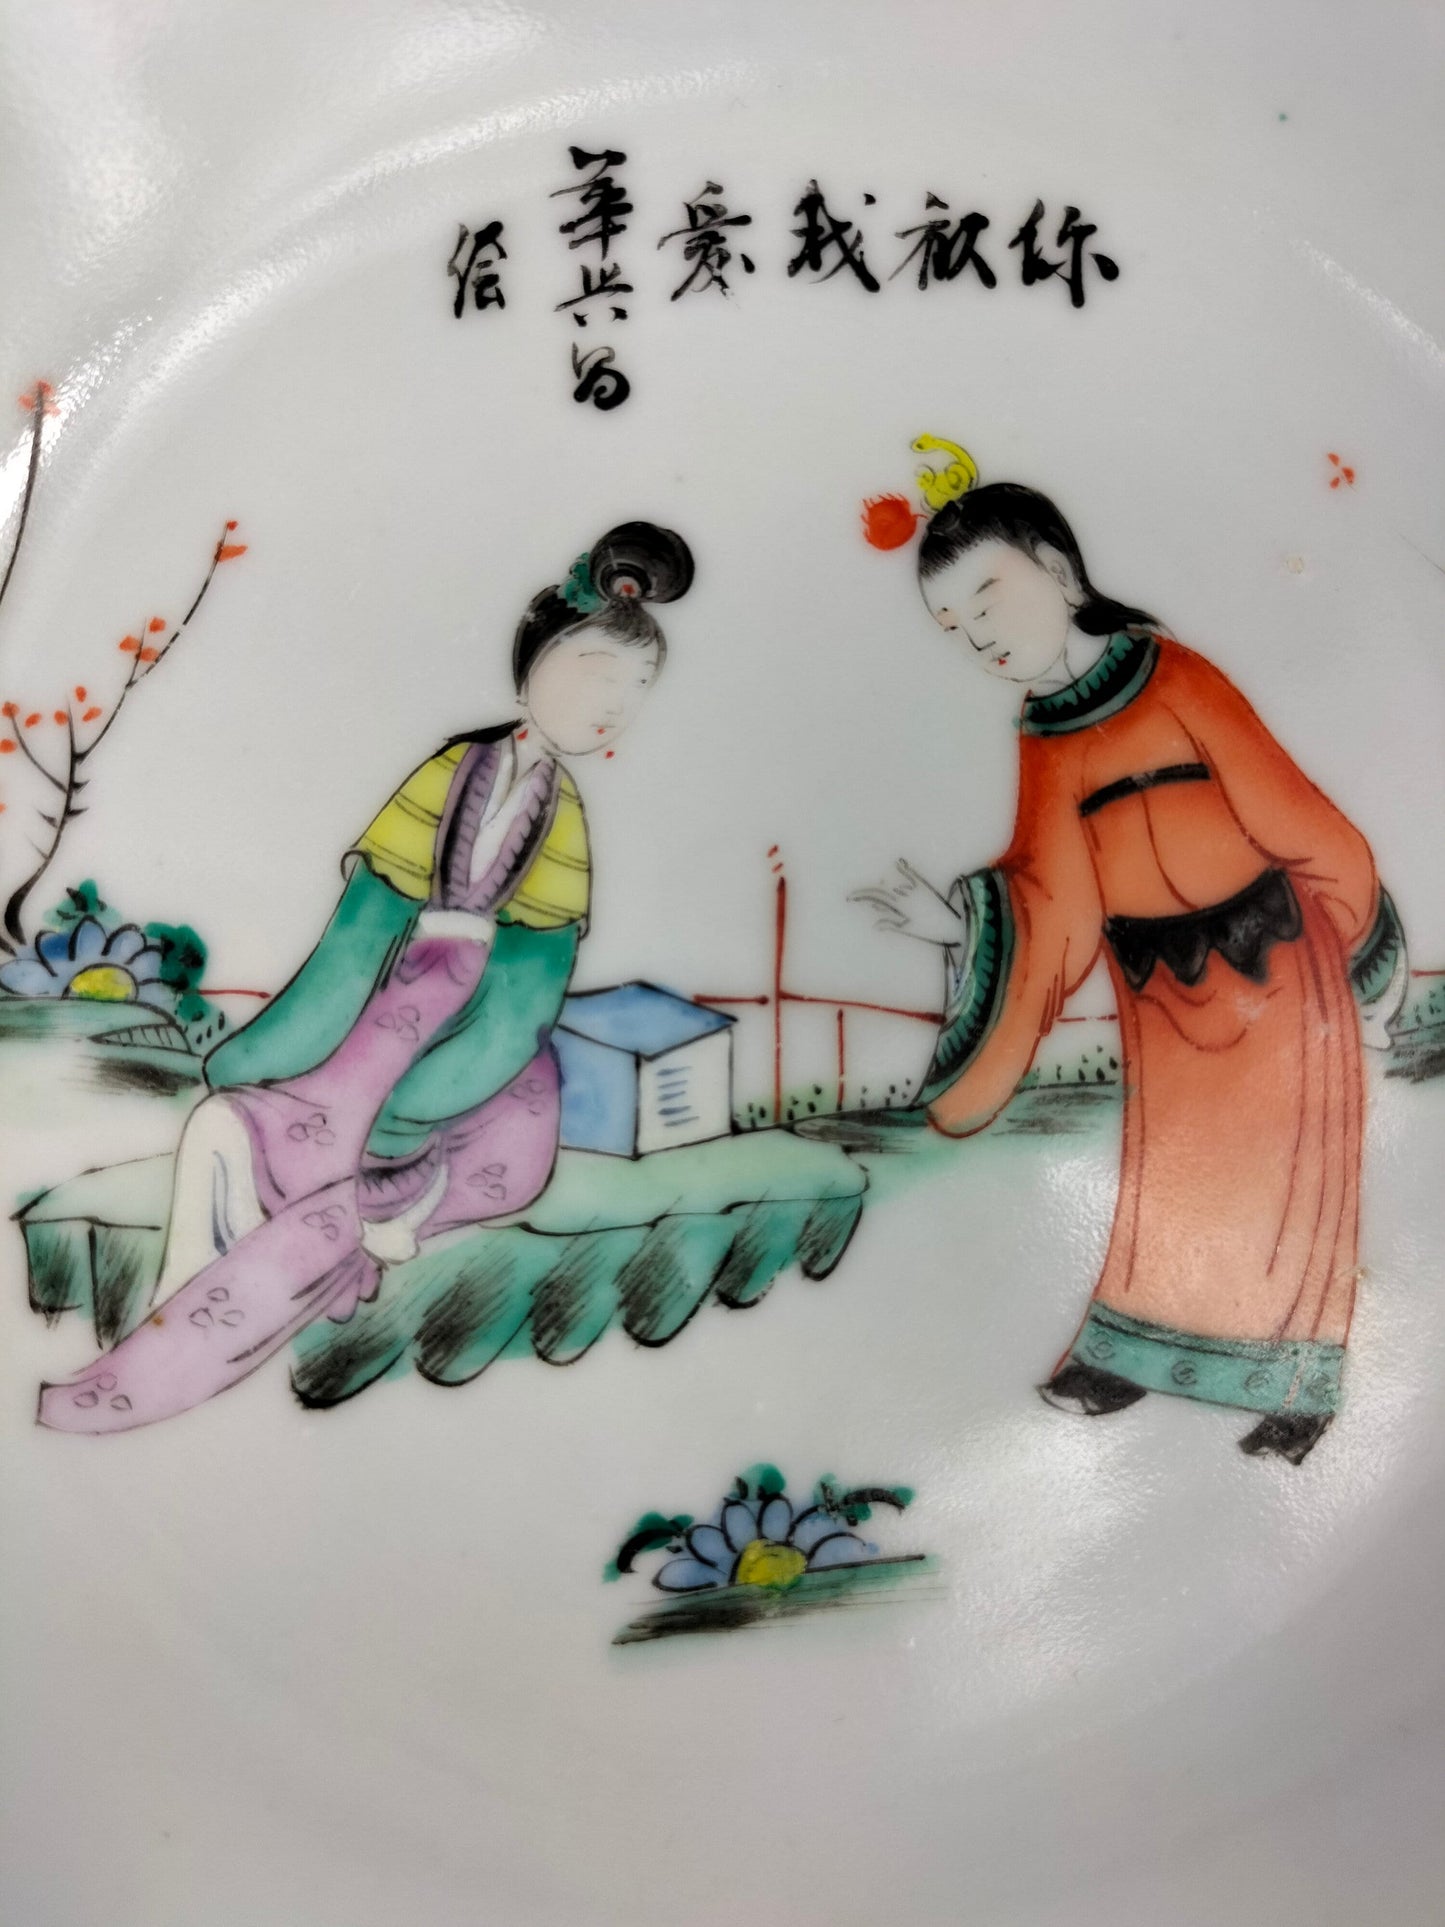 Đĩa cổ Trung Quốc trang trí cảnh vườn // Thời kỳ Cộng hòa (1912-1949)